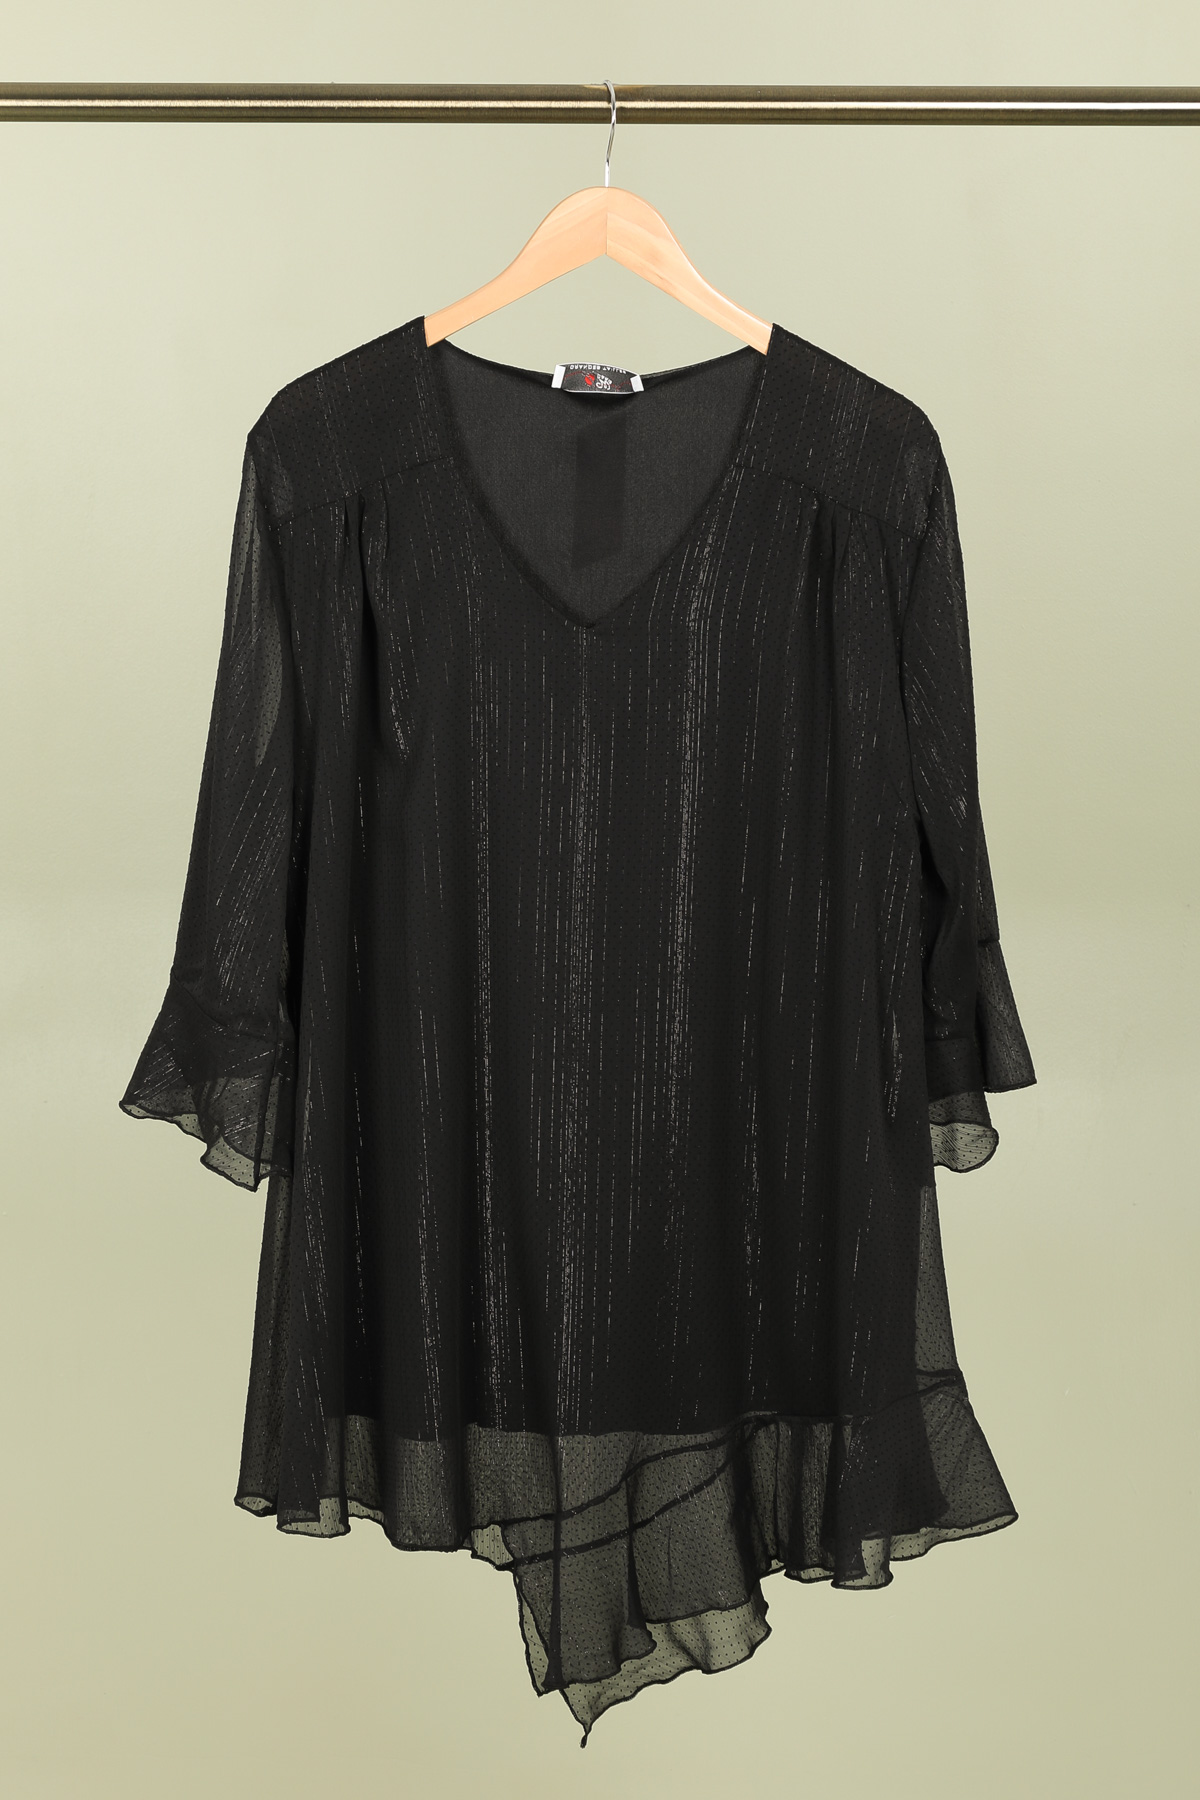 blouse noire grande taille 46 au 60 marque 2w paris h3679